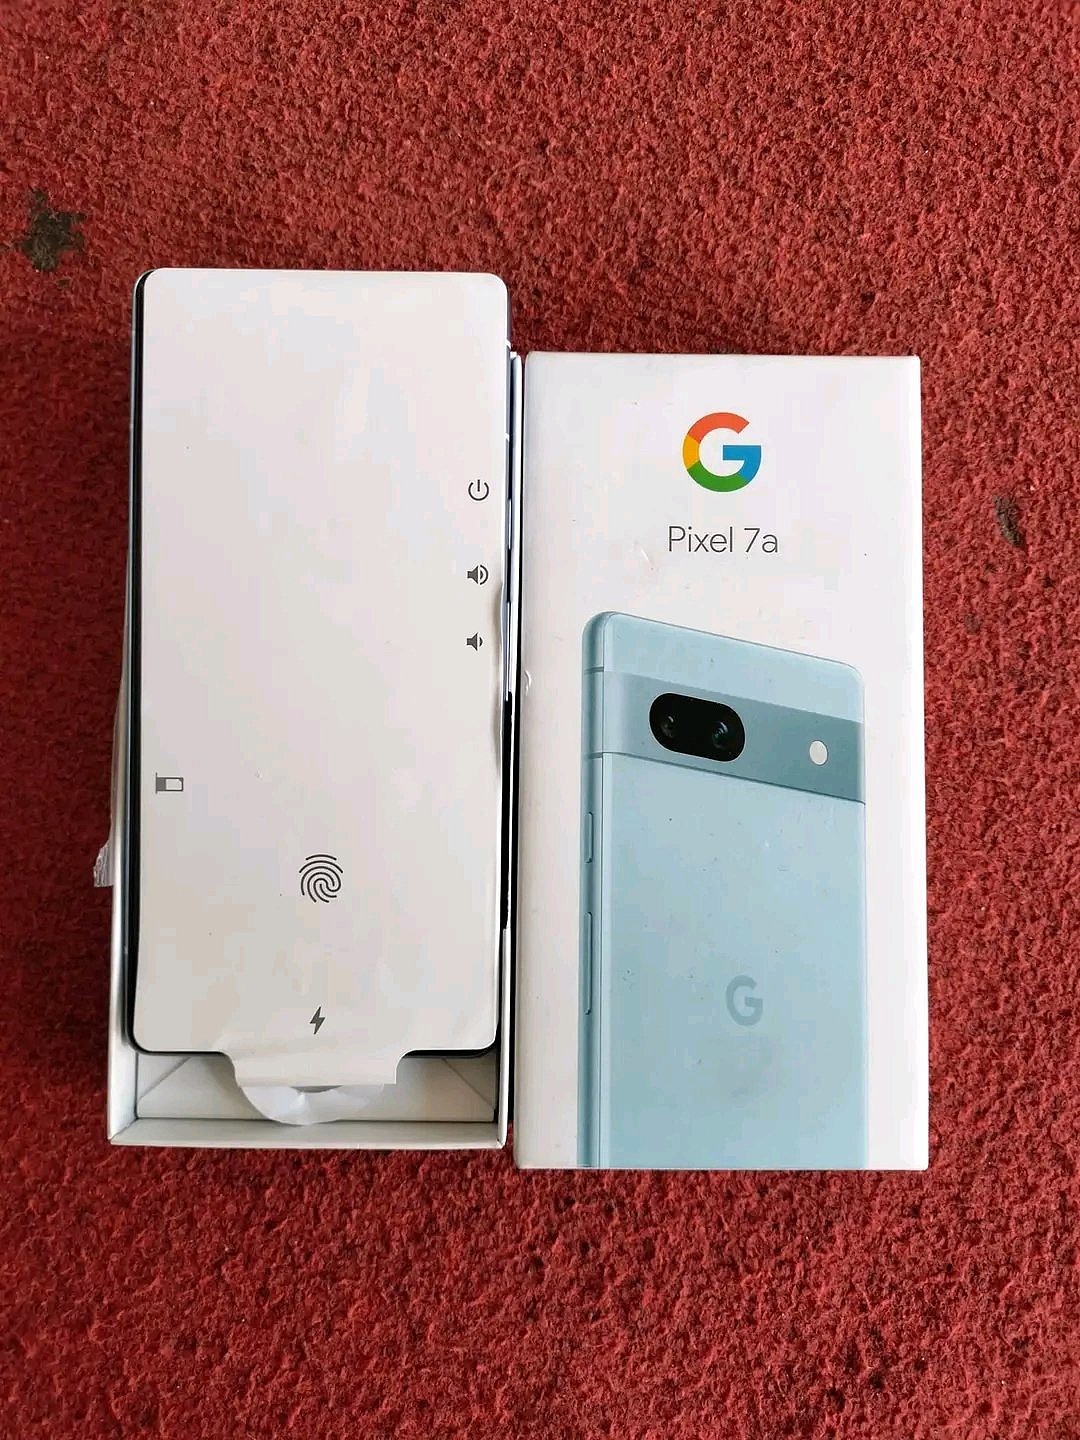 北极蓝和碳灰色谷歌 Pixel 7a 手机照片曝光 - 2